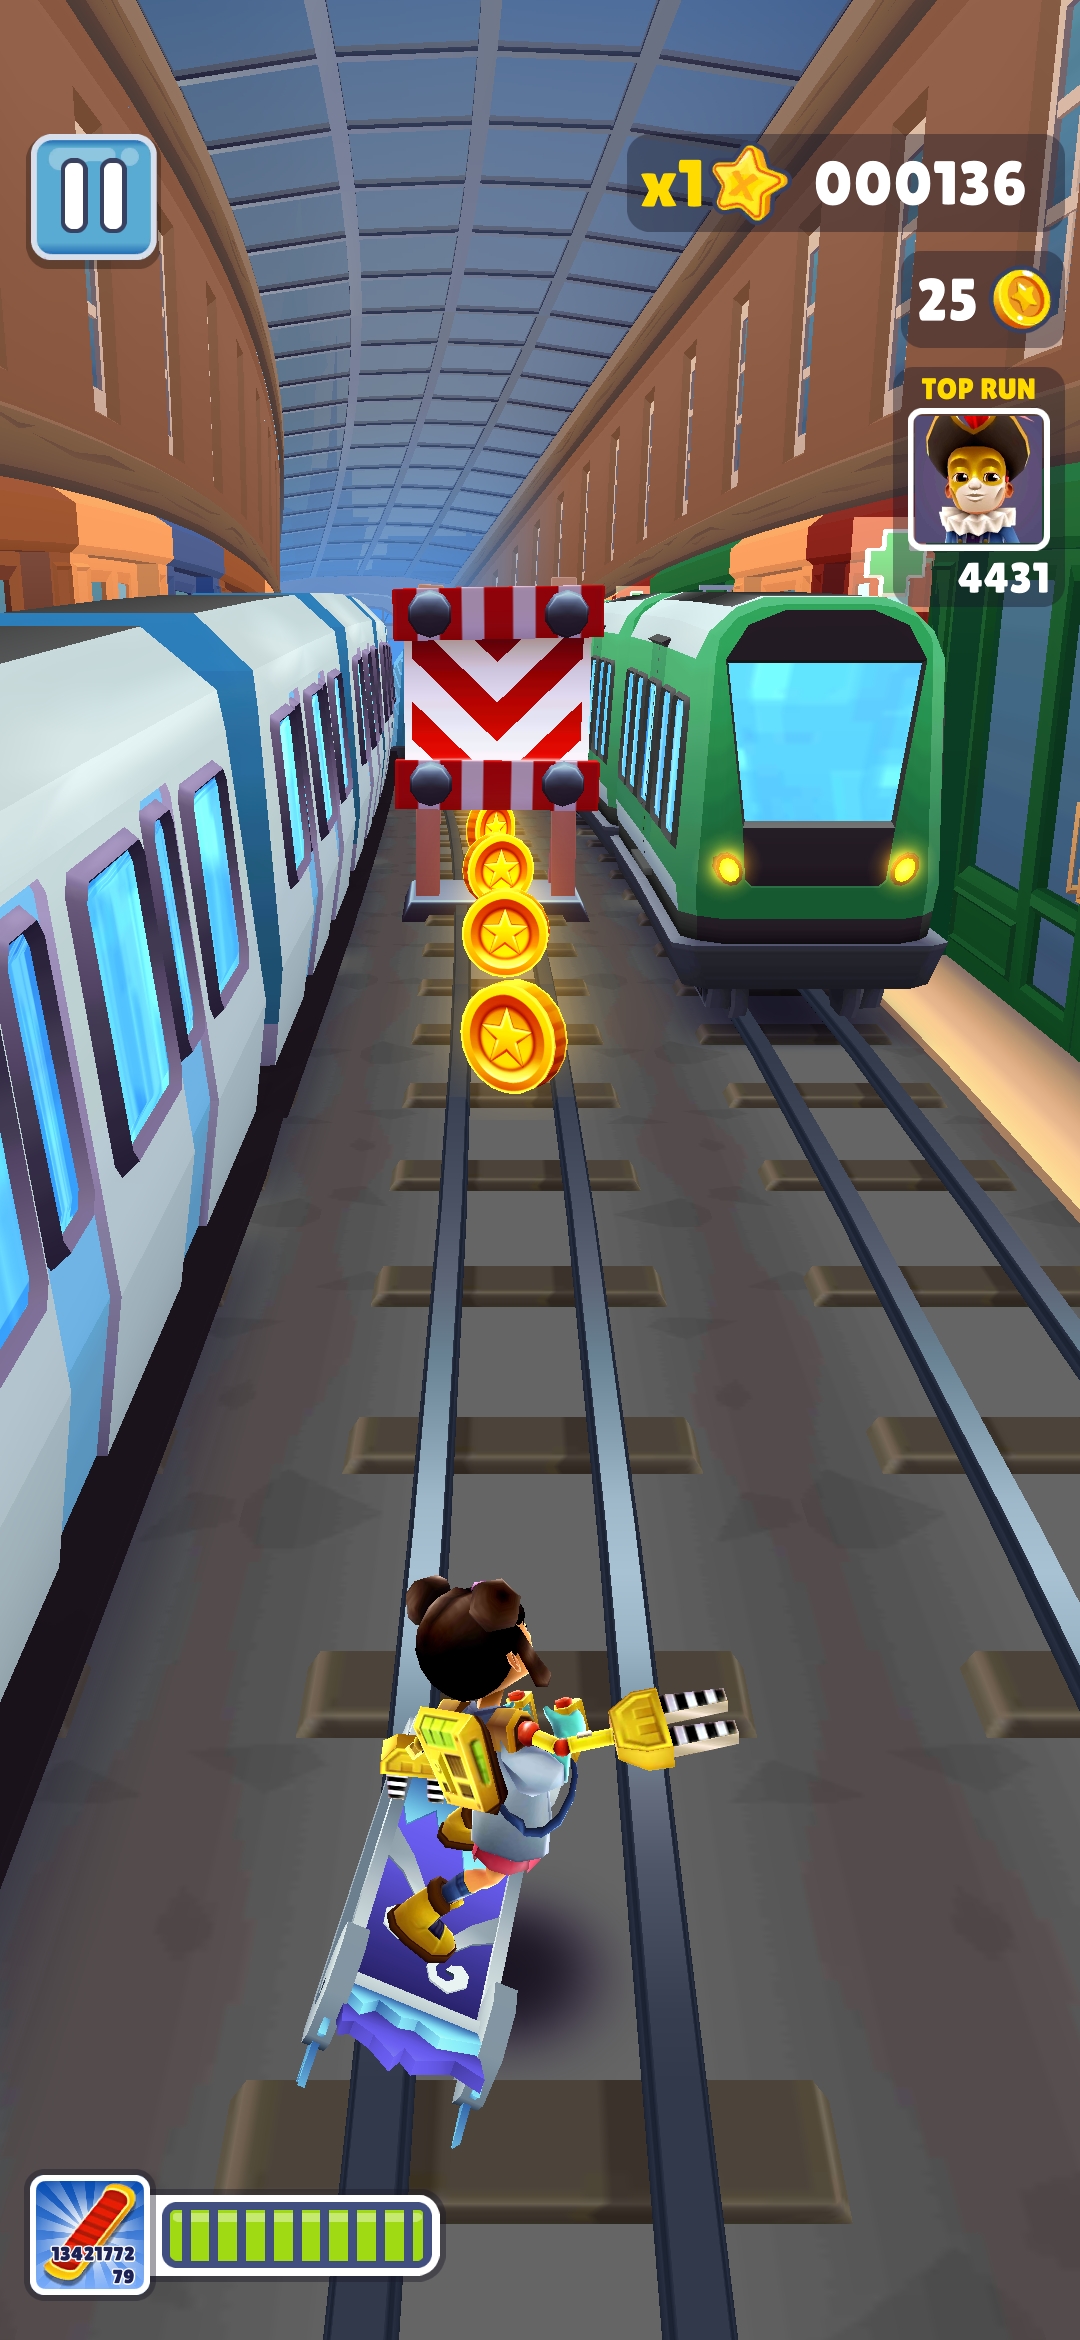 地铁酷跑破解版游戏特色1,这是一个全新的主题游戏跑酷游戏,从地铁